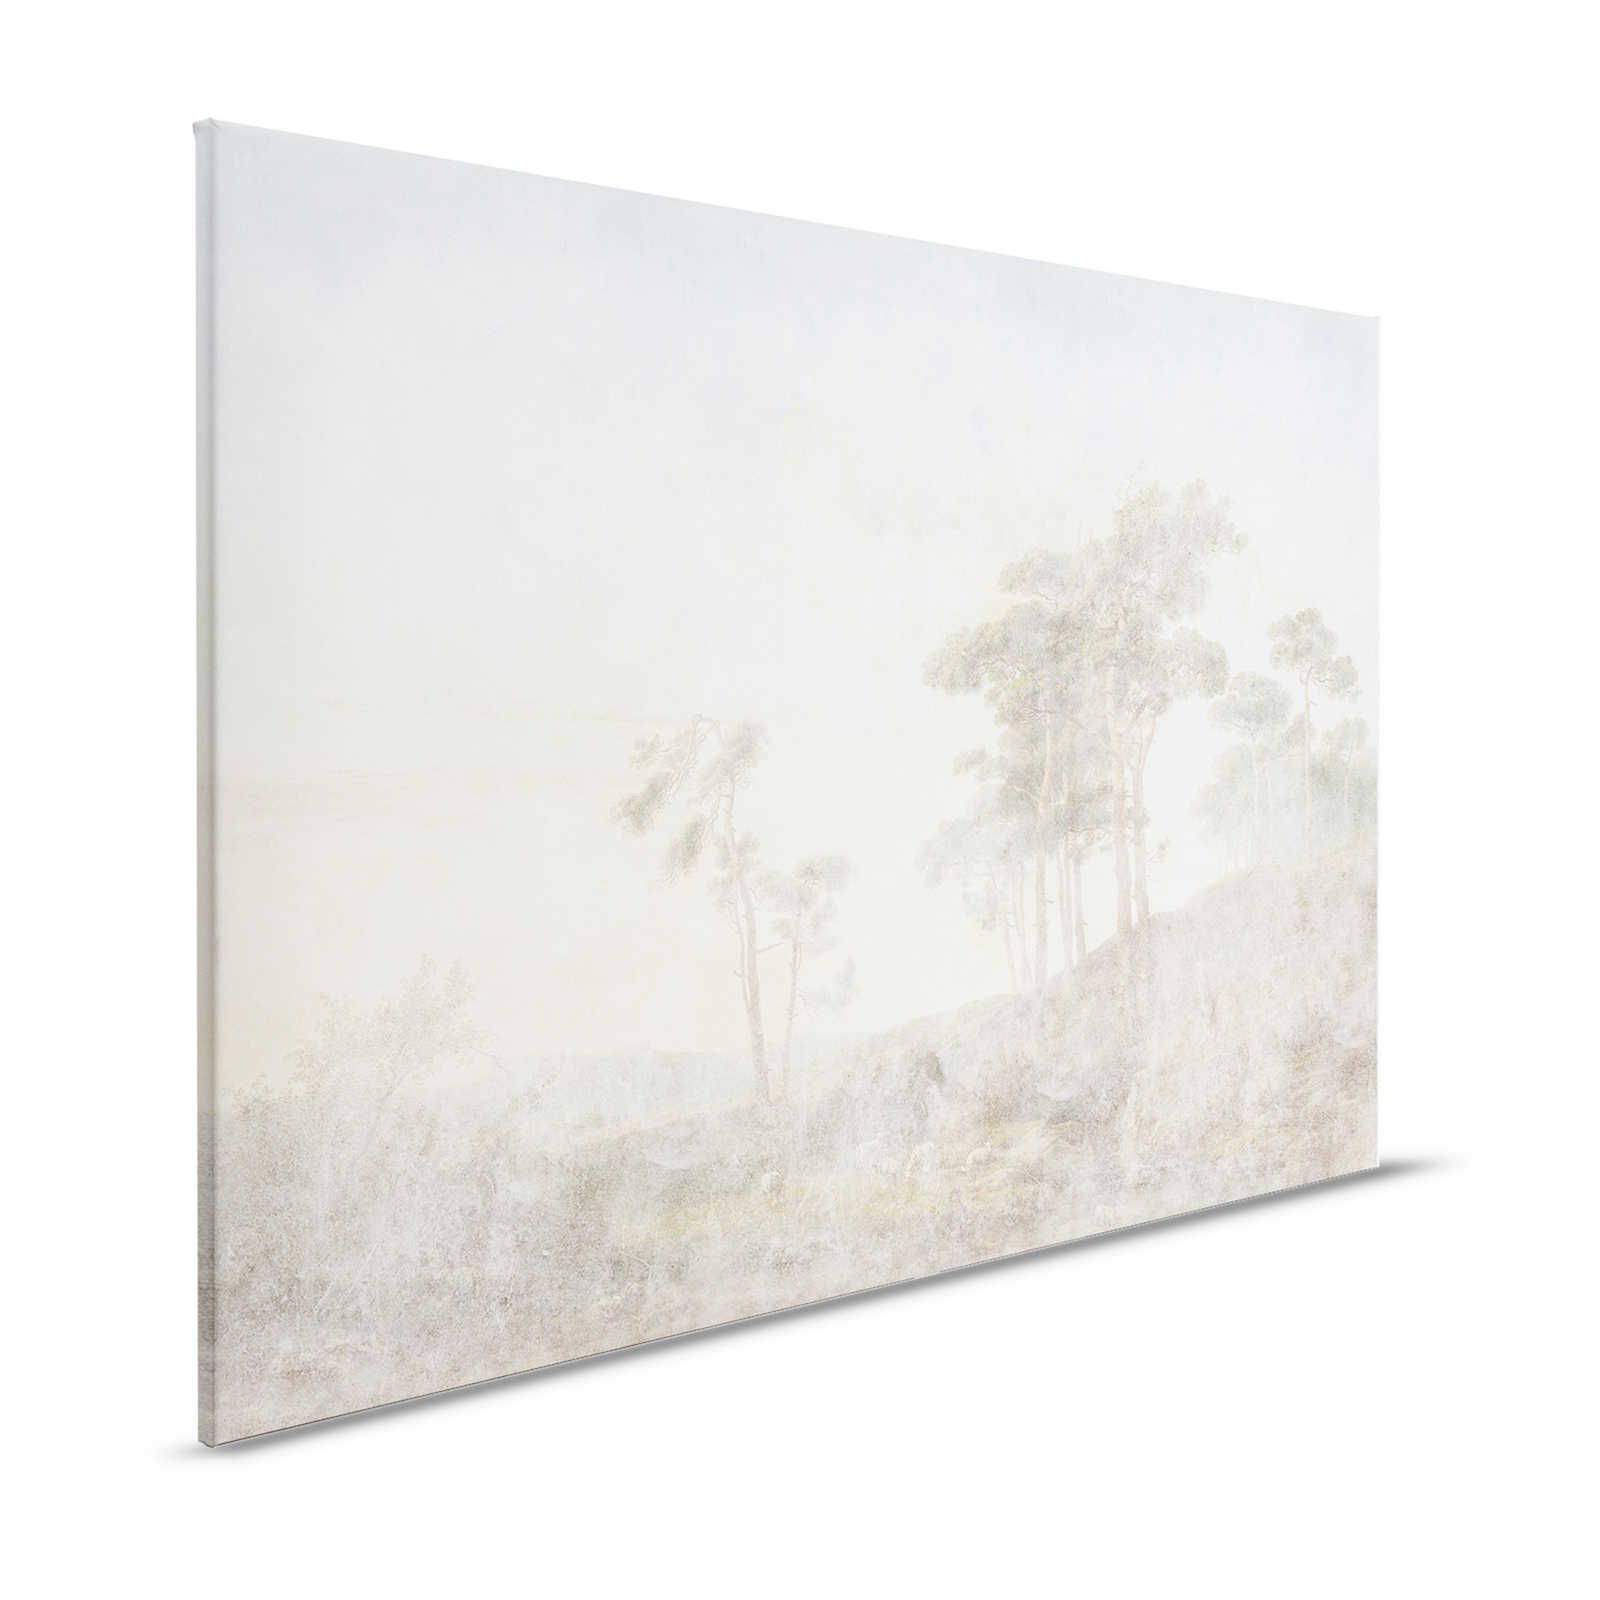 Romantic Grove 1 - Quadro su tela dall'aspetto usato e sbiadito - 1,20 m x 0,80 m
